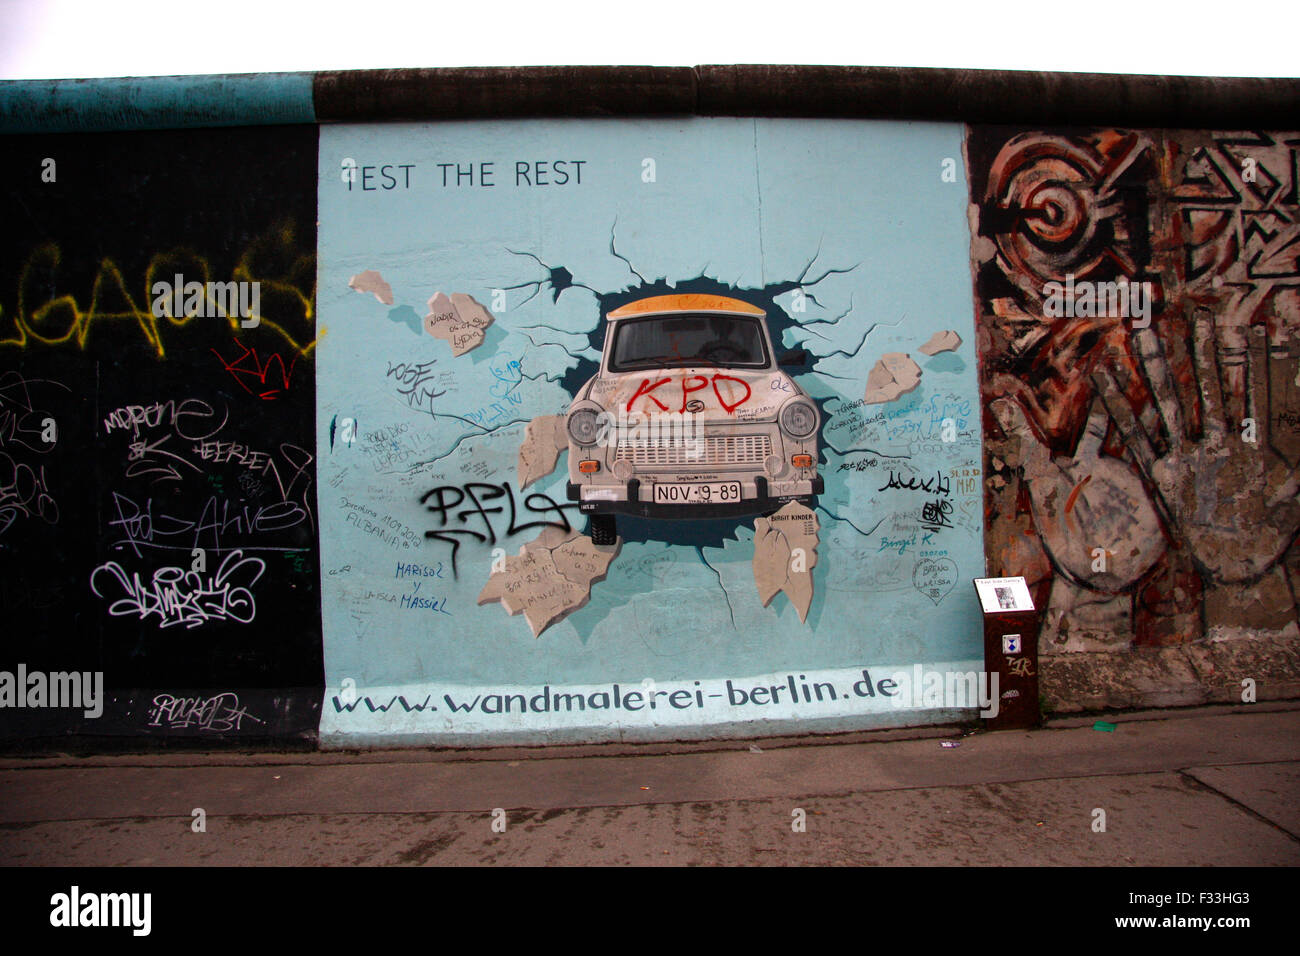 Impressionen: das Mauerstueck an der East Side Gallery mit dem Bild von Birgit Kinder 'Prova il resto', Zustand Aprile 2013, Berl Foto Stock